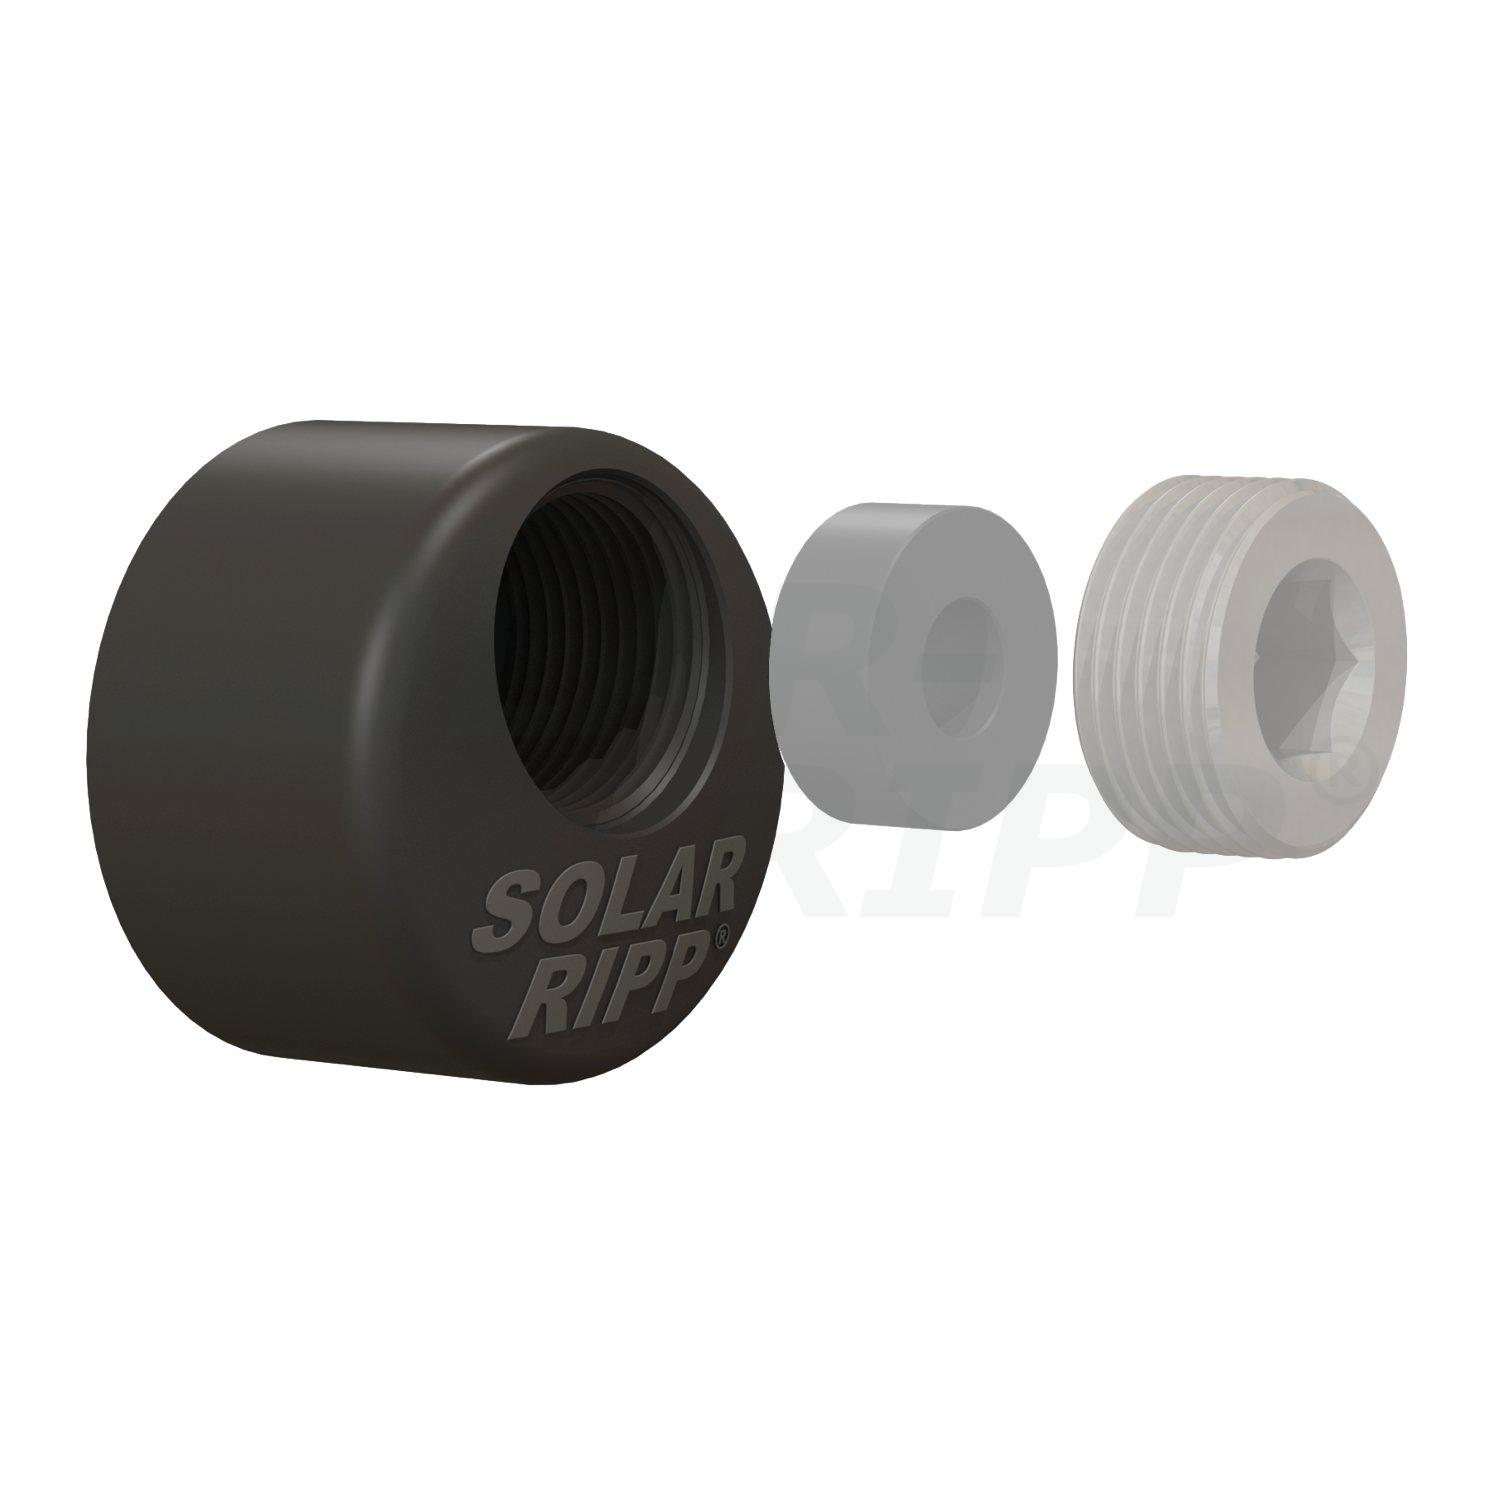 Extremidade do distribuidor SOLAR-RIPP ® 50mm com rosca interna de 3/4" para soldagem